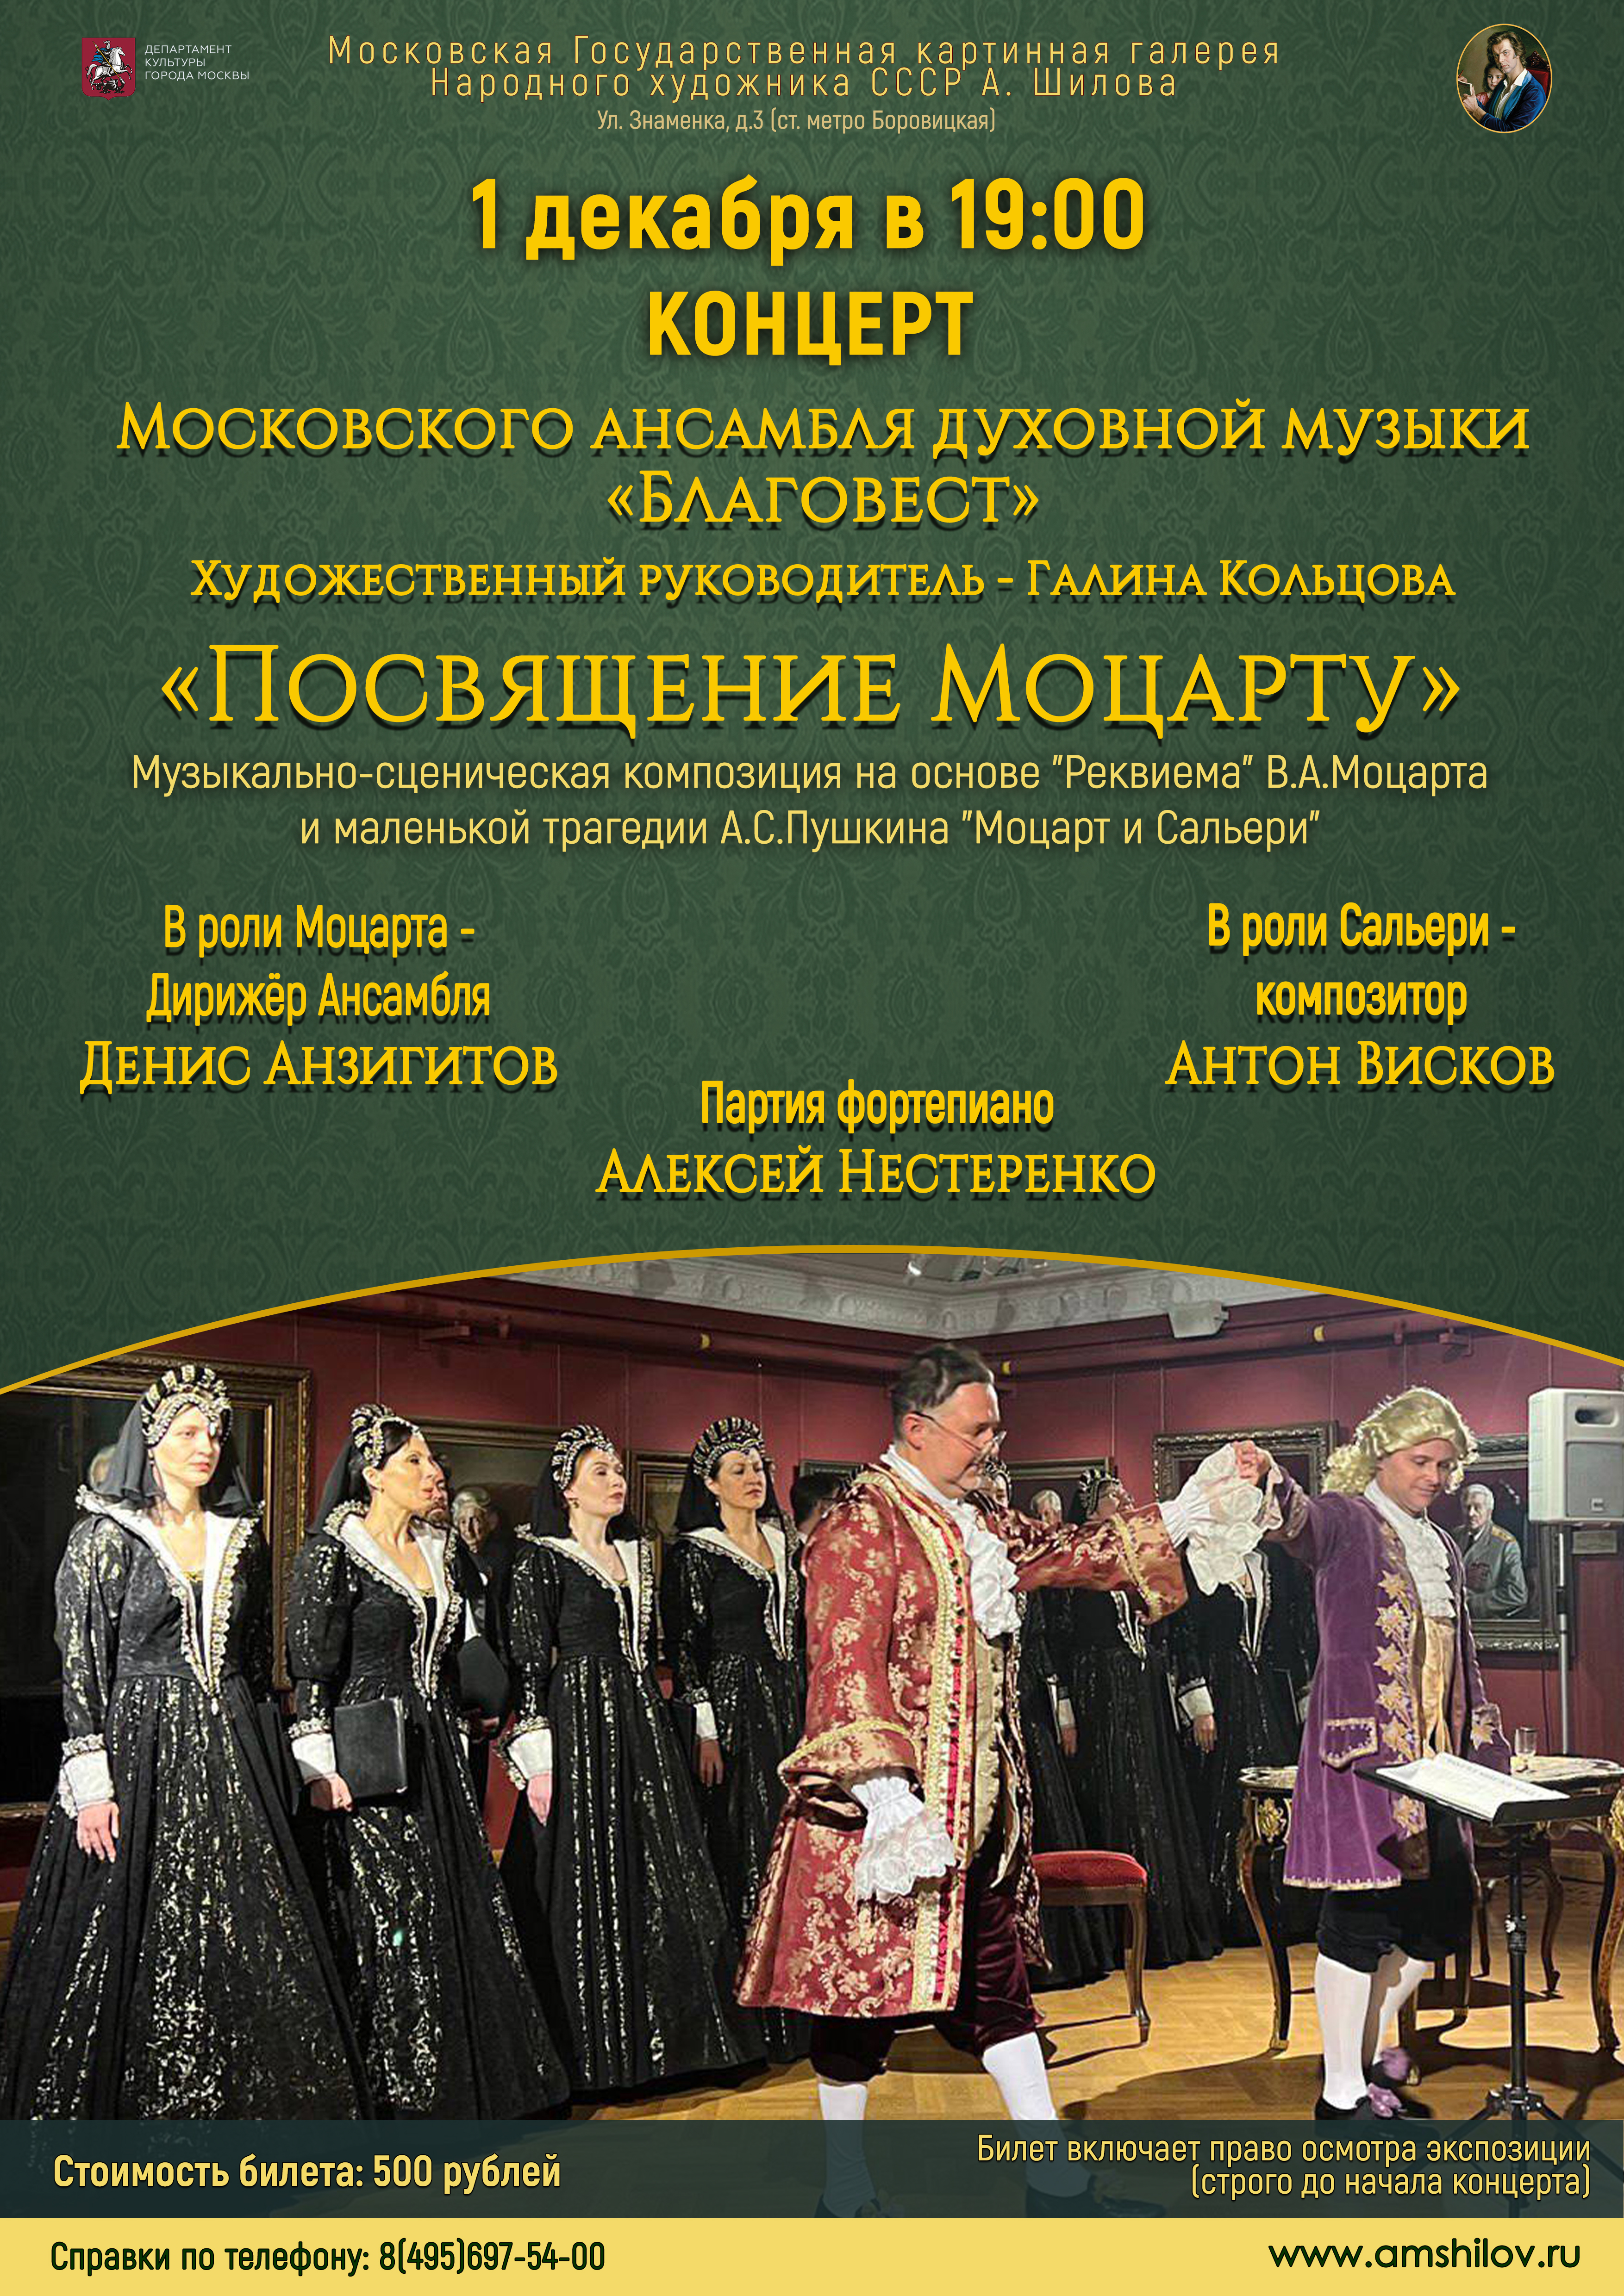 Концерт «Посвящение Моцарту» Московского ансамбля духовной музыки «Благовест»